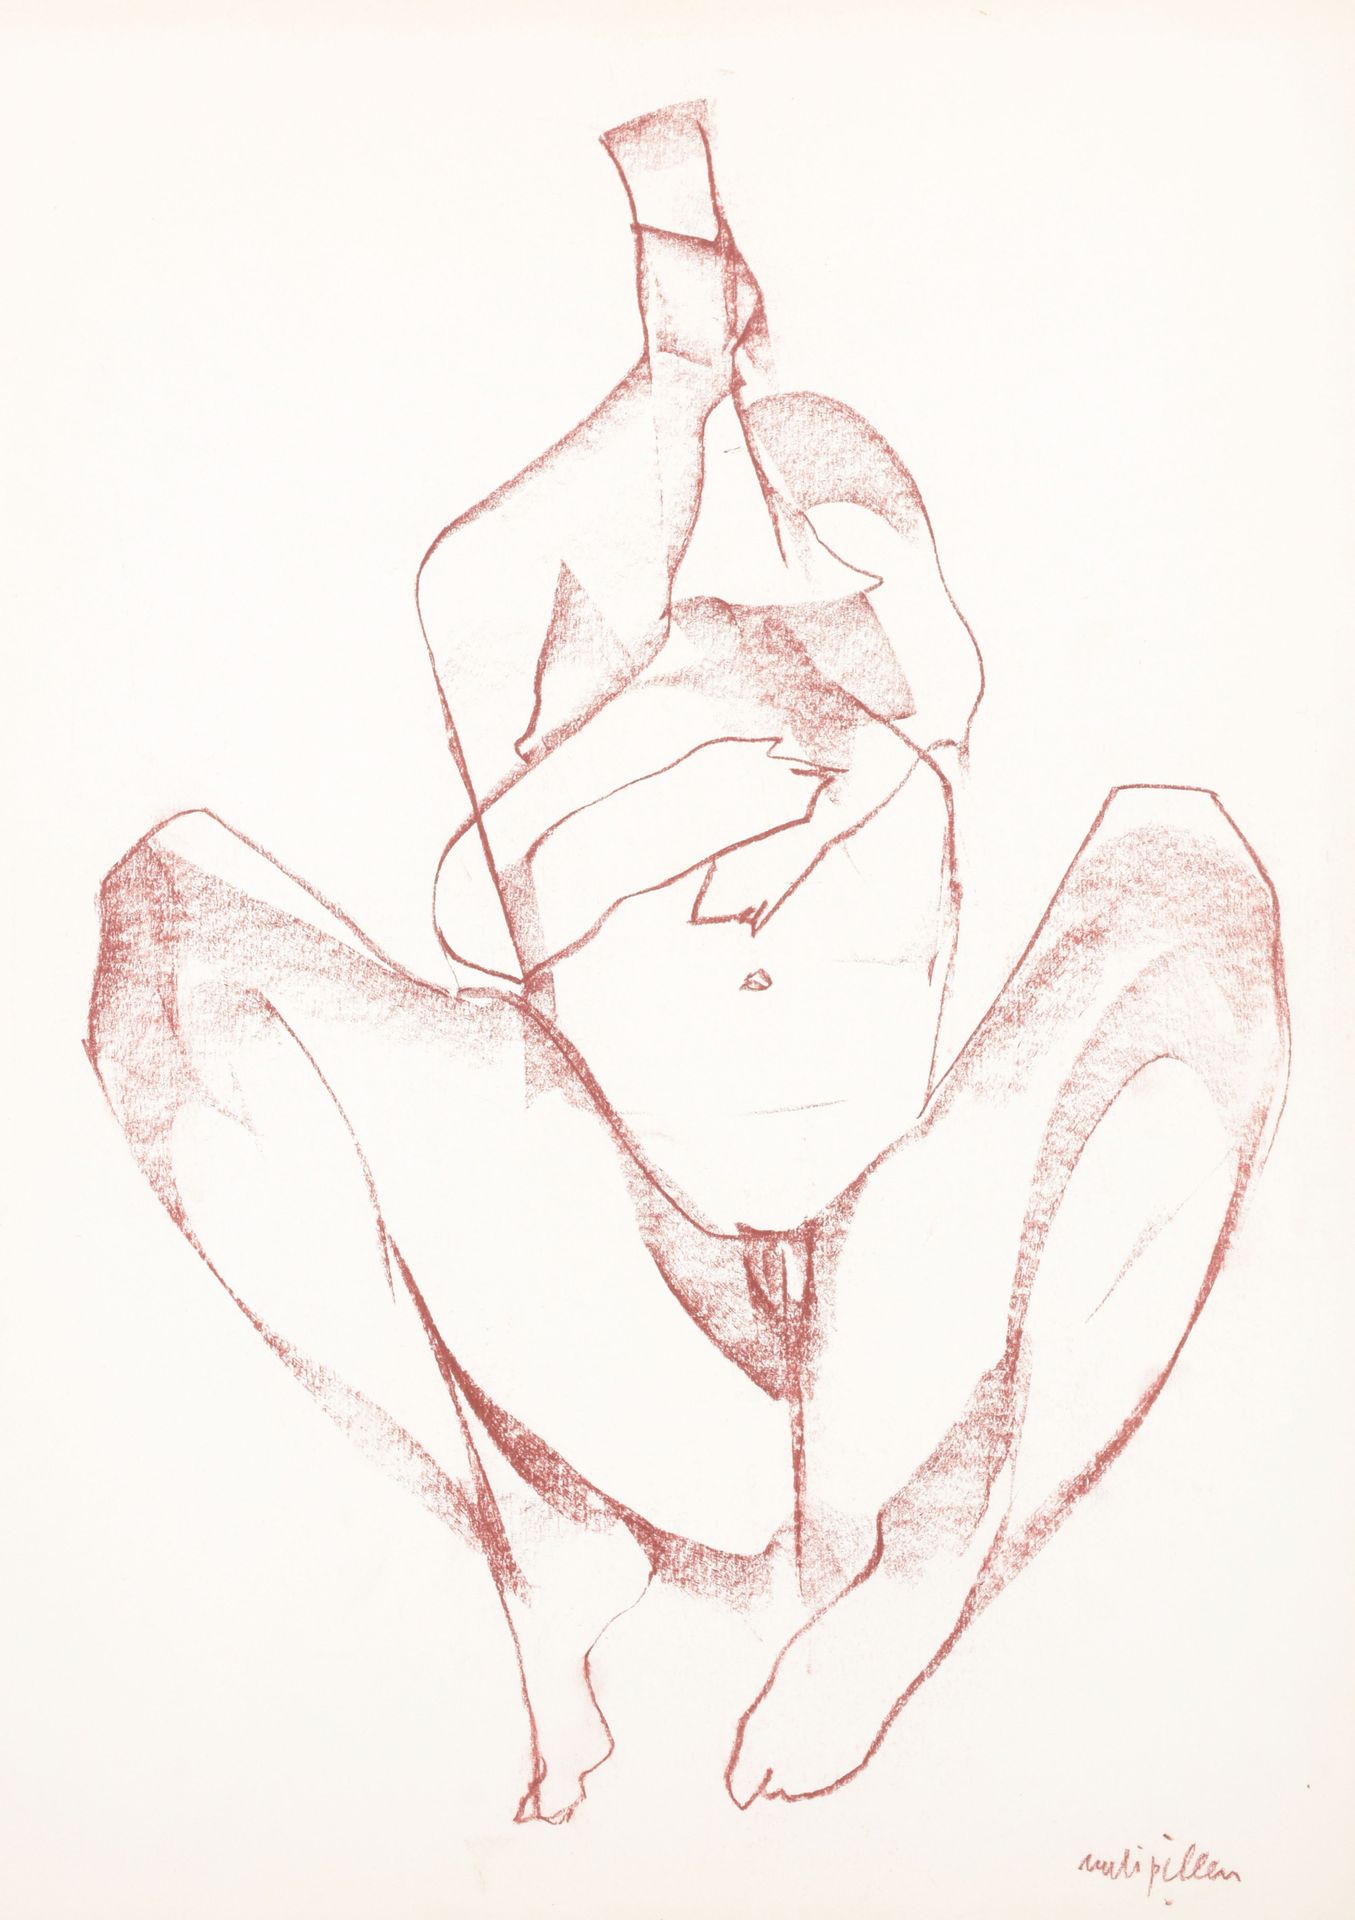 PILLEN, Rudi (1931-2014) Verzameling van 5 tekeningen met figuren van vrouwen

A&hellip;